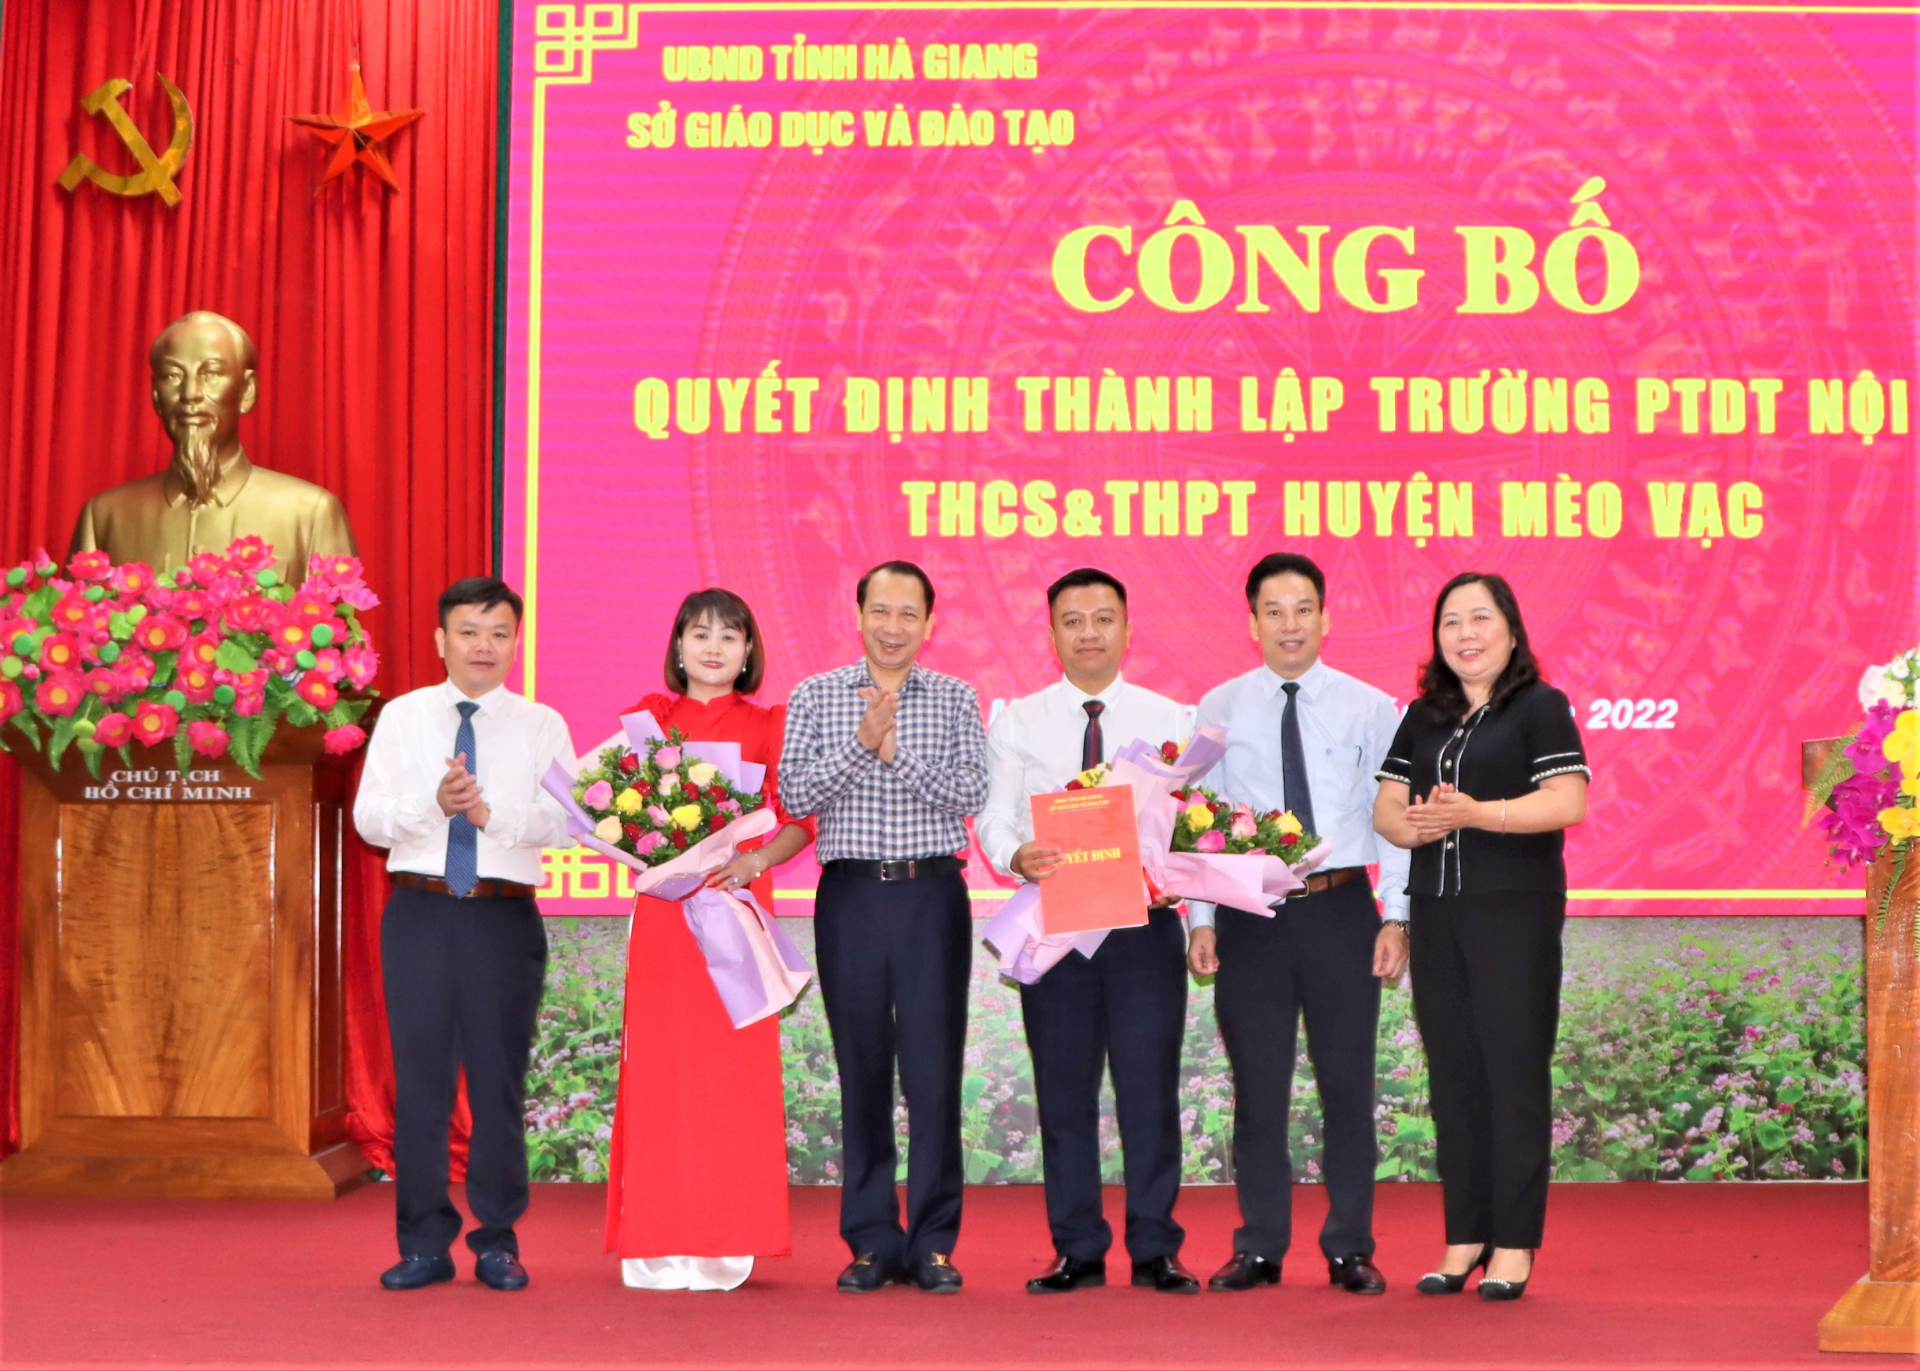 Đồng chí Trần Đức Quý, Phó Chủ tịch UBND tỉnh trao Quyết định thành lập Trường Phổ thông Dân tộc Nội trú – THCS và THPT huyện Mèo Vạc.